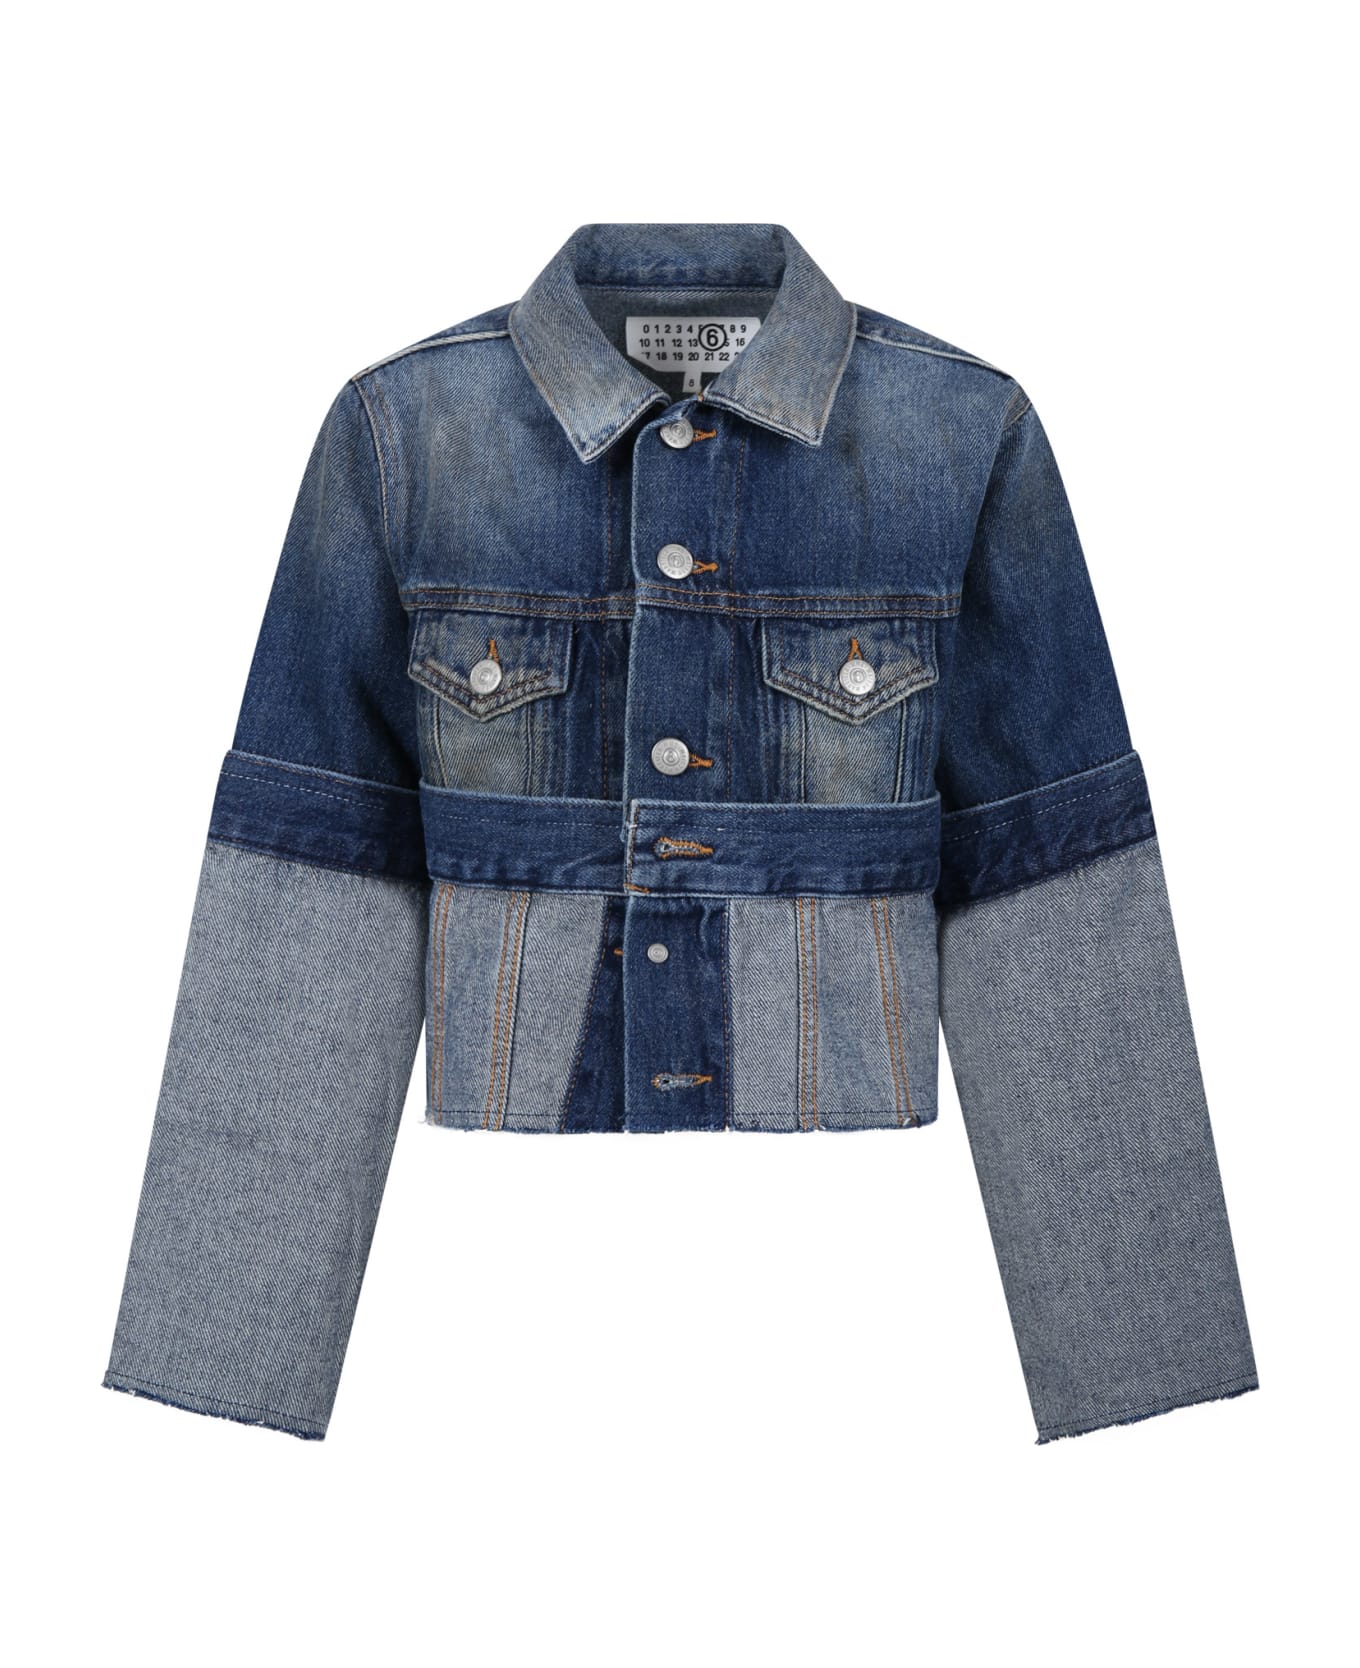 MM6 Maison Margiela Blue Jacket For Girl - Denim